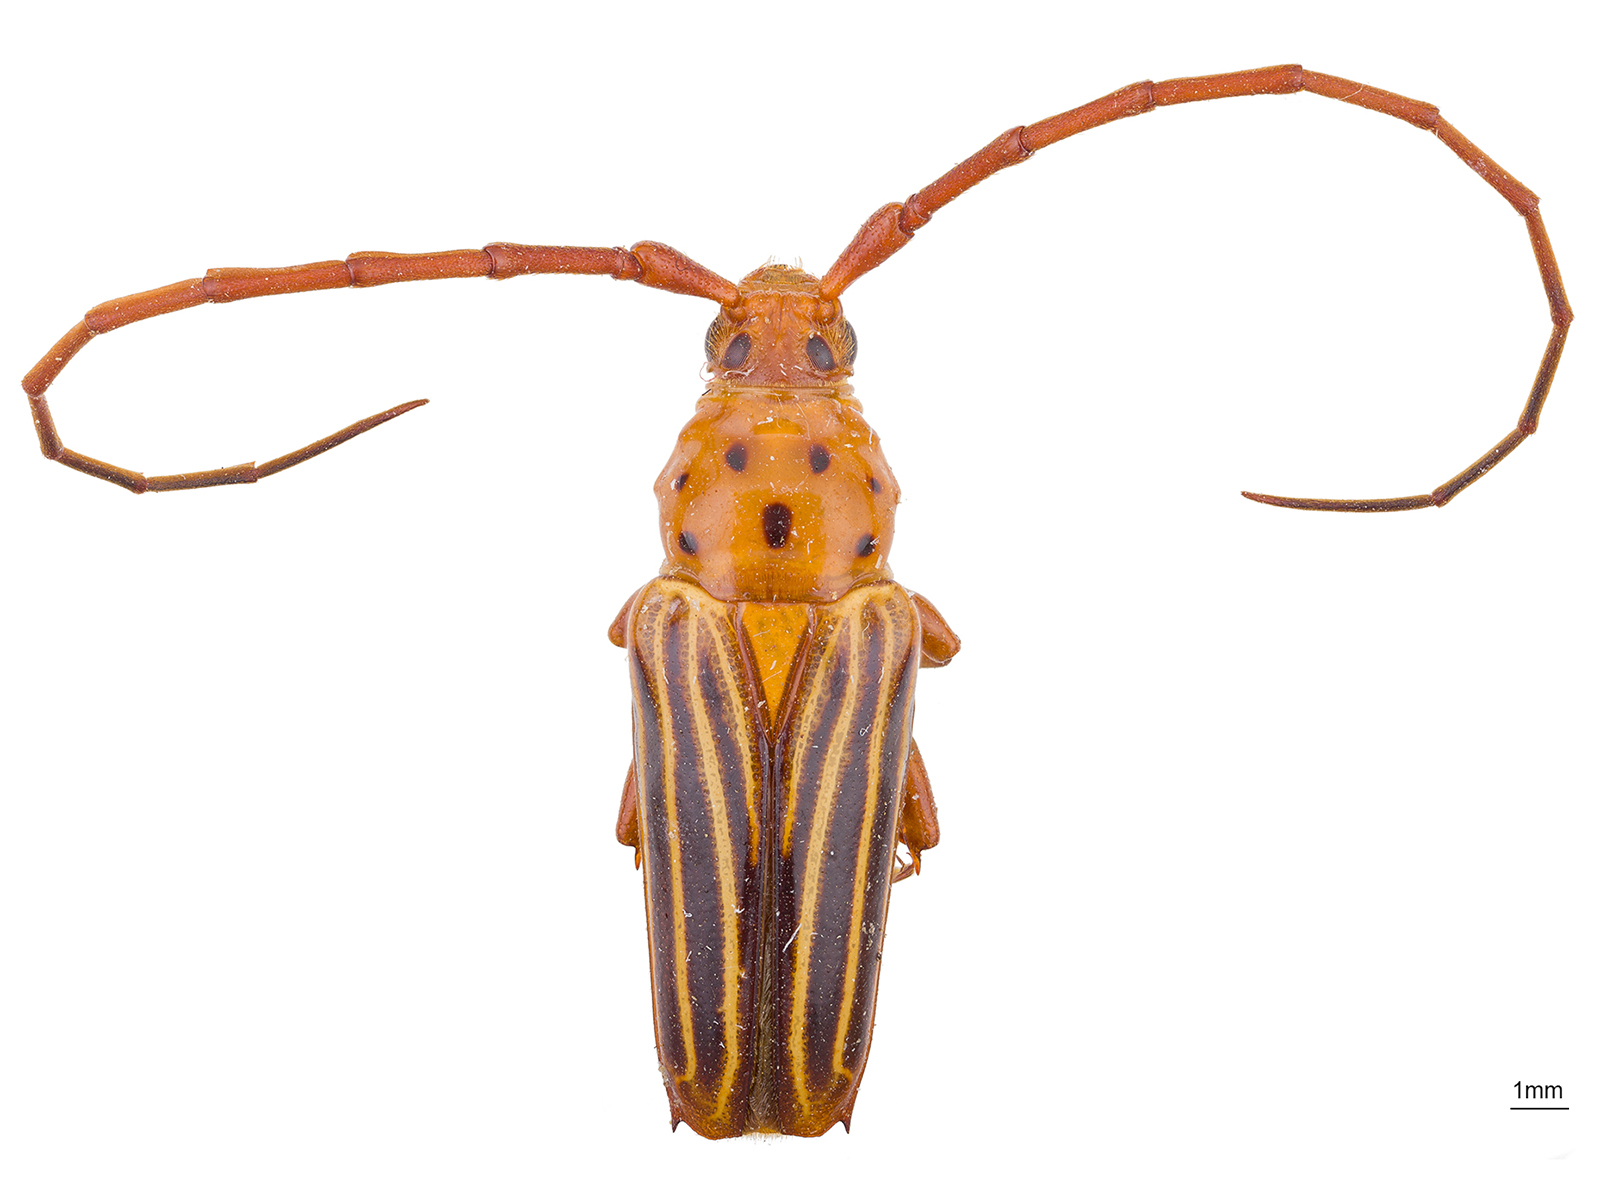 Oxymerus aculeatus lebasii Dupont, 1838